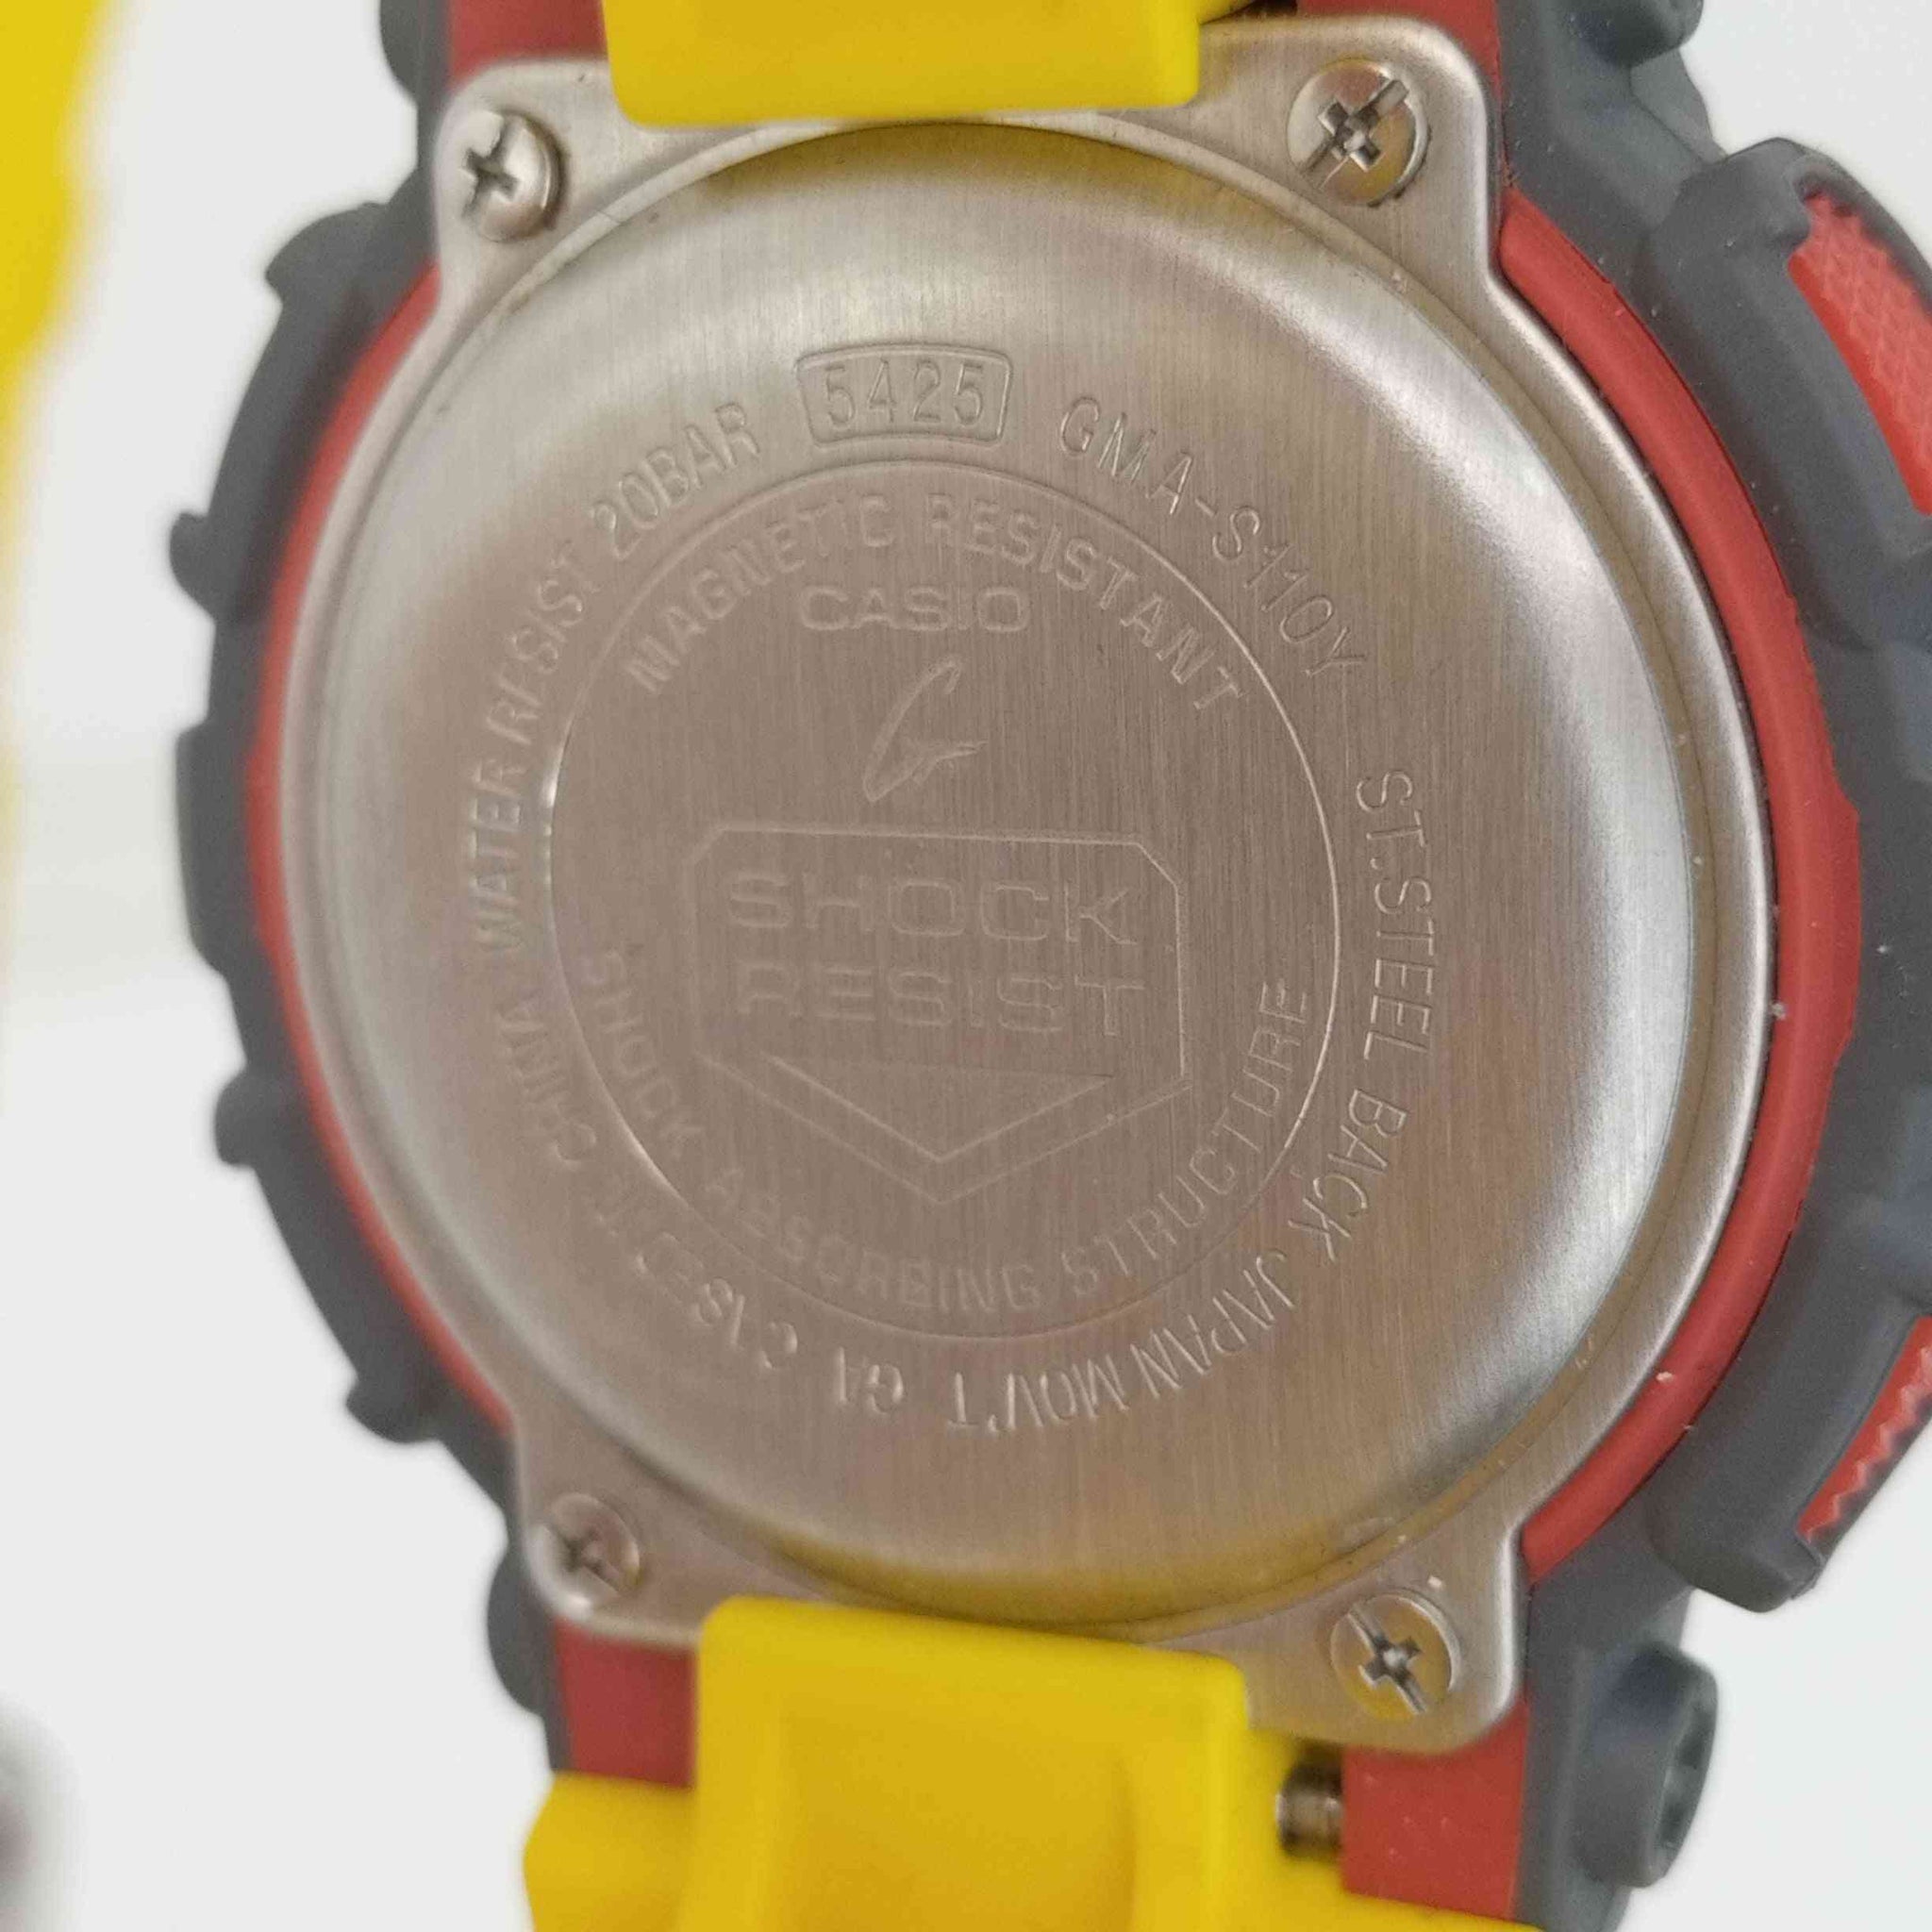 CASIO G-SHOCK(カシオジーショック)GMA-S110Y 腕時計